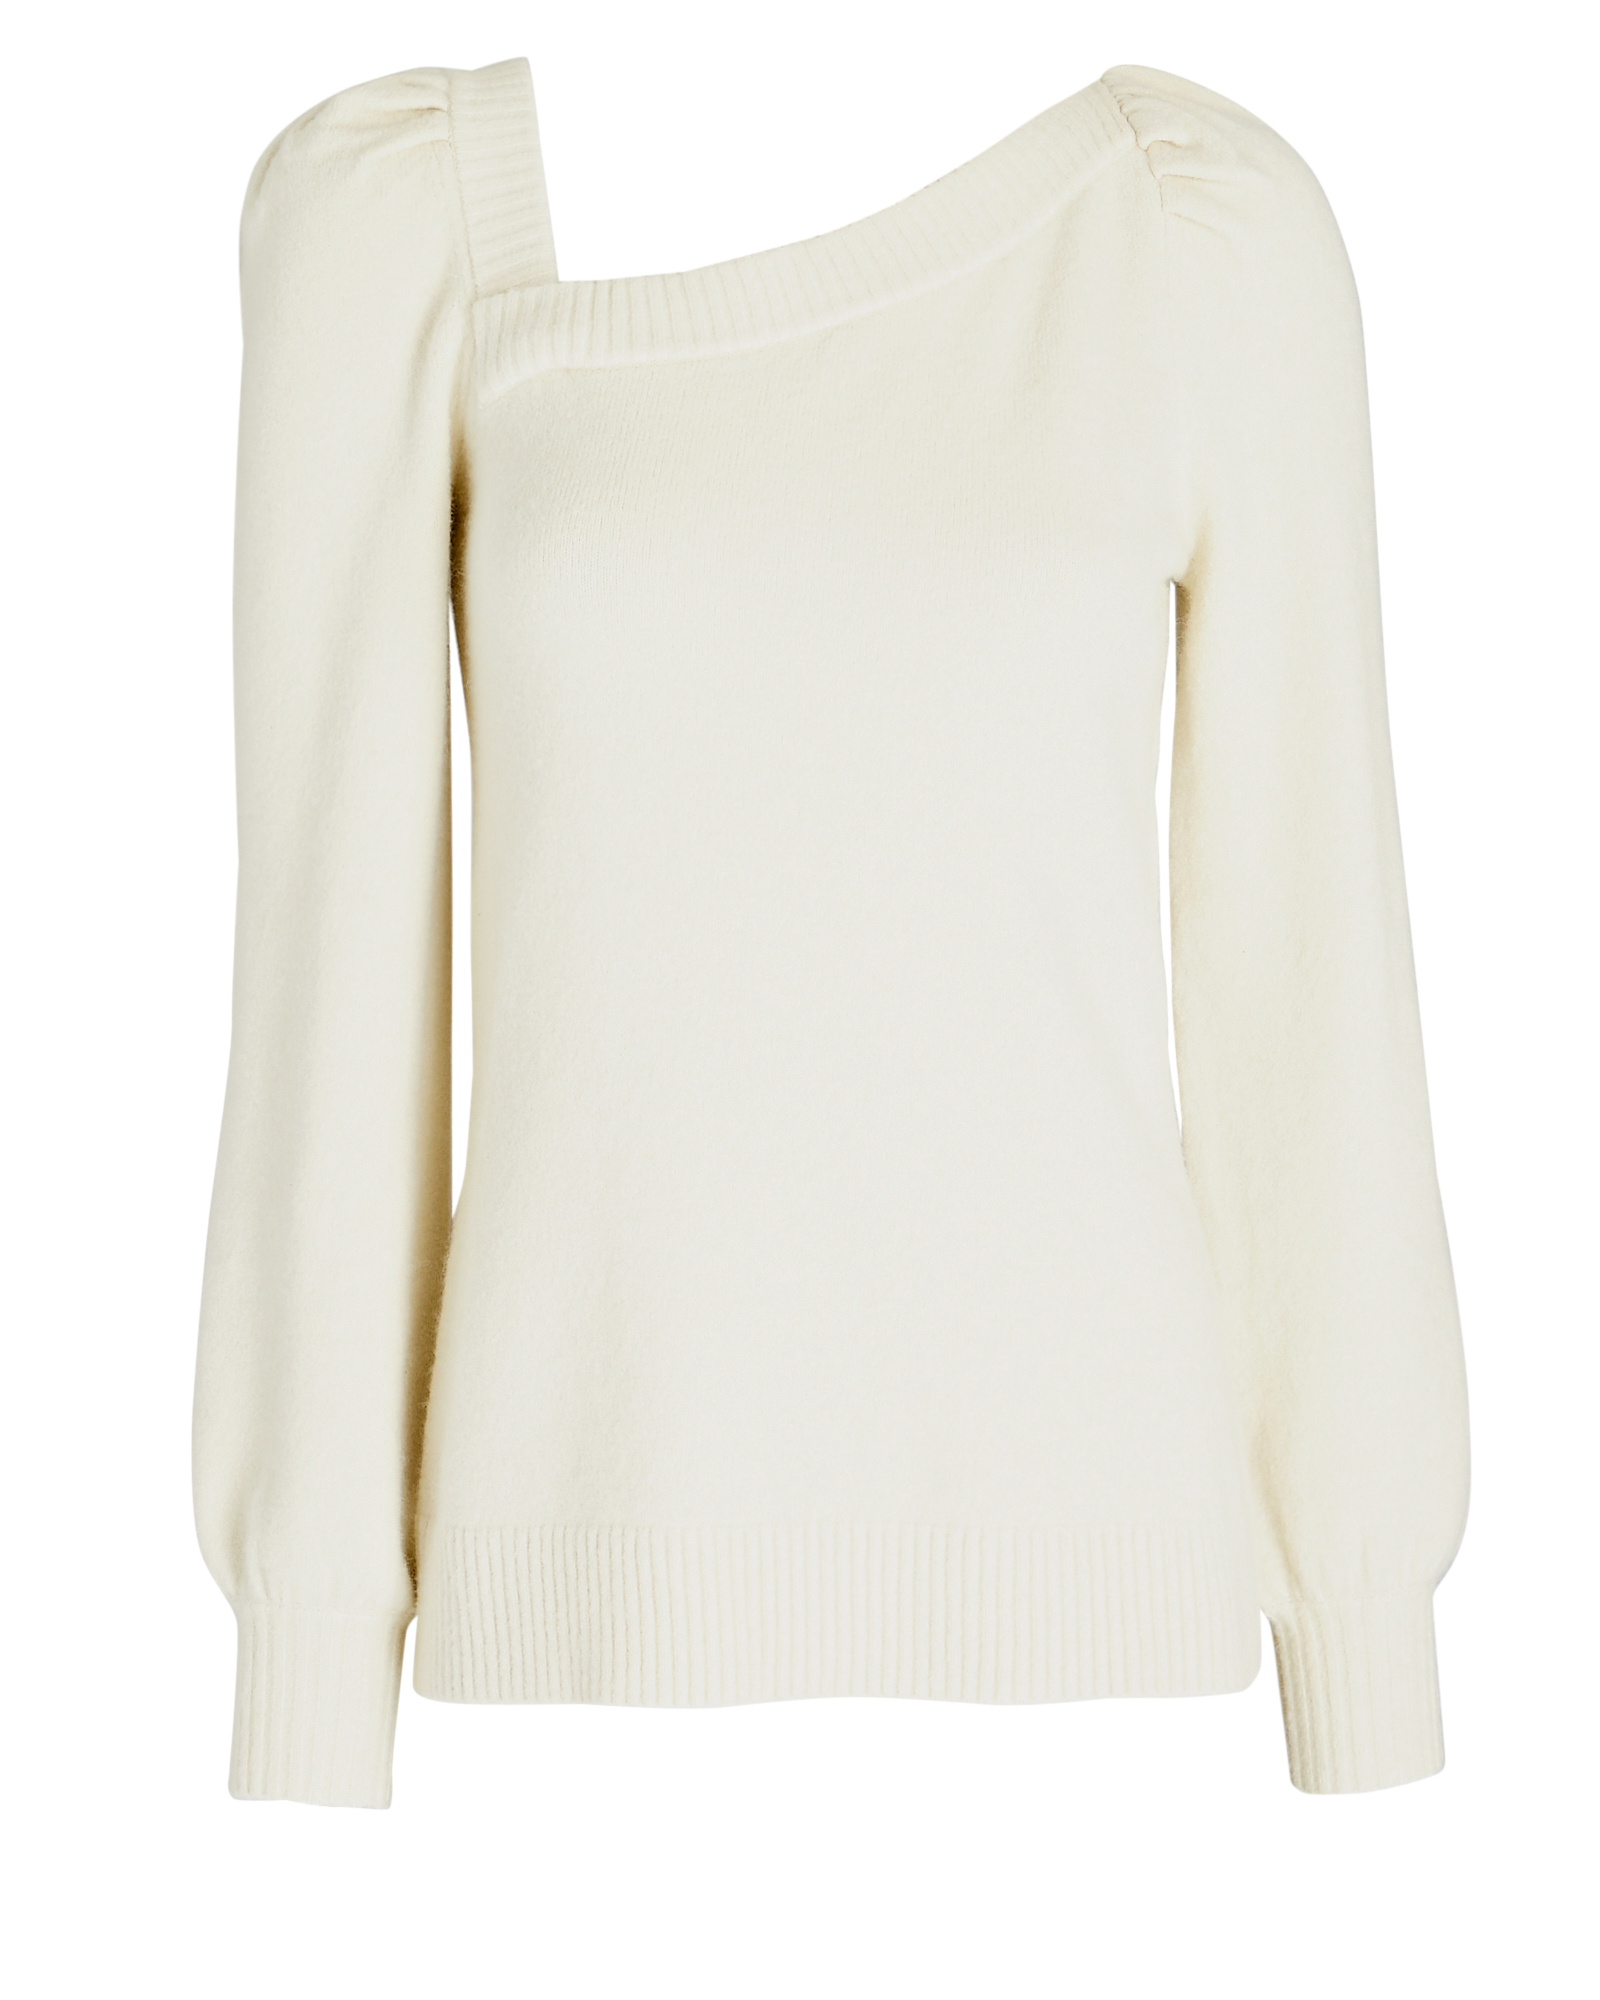 Marissa Webb Dixie Sweater In White | INTERMIX®